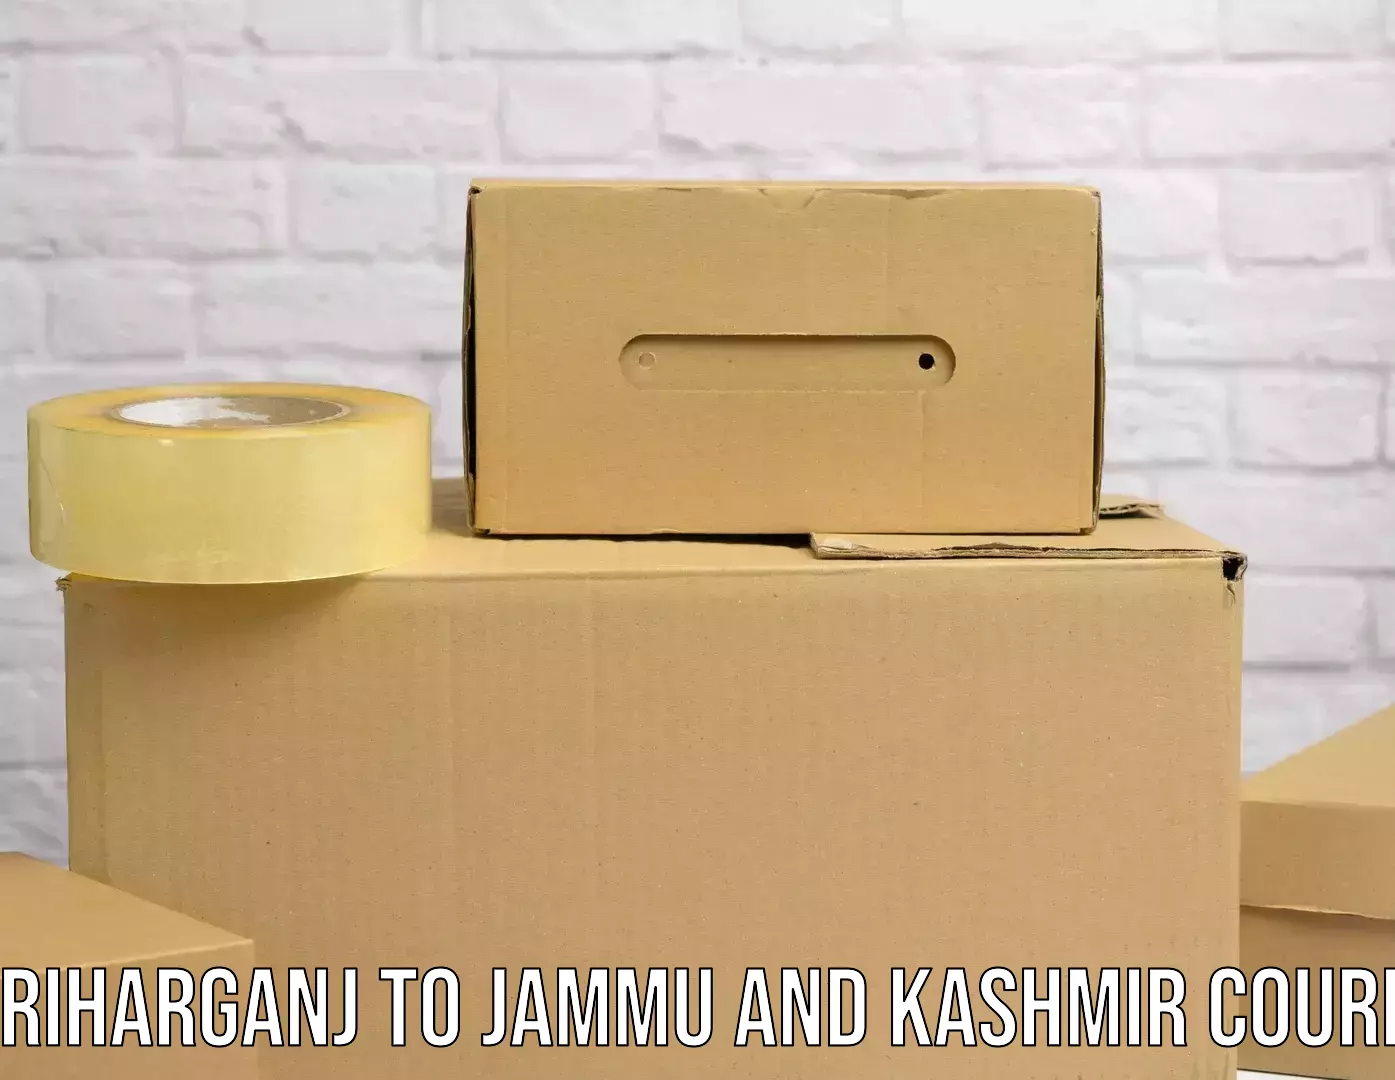 Global logistics network Hariharganj to Jammu and Kashmir